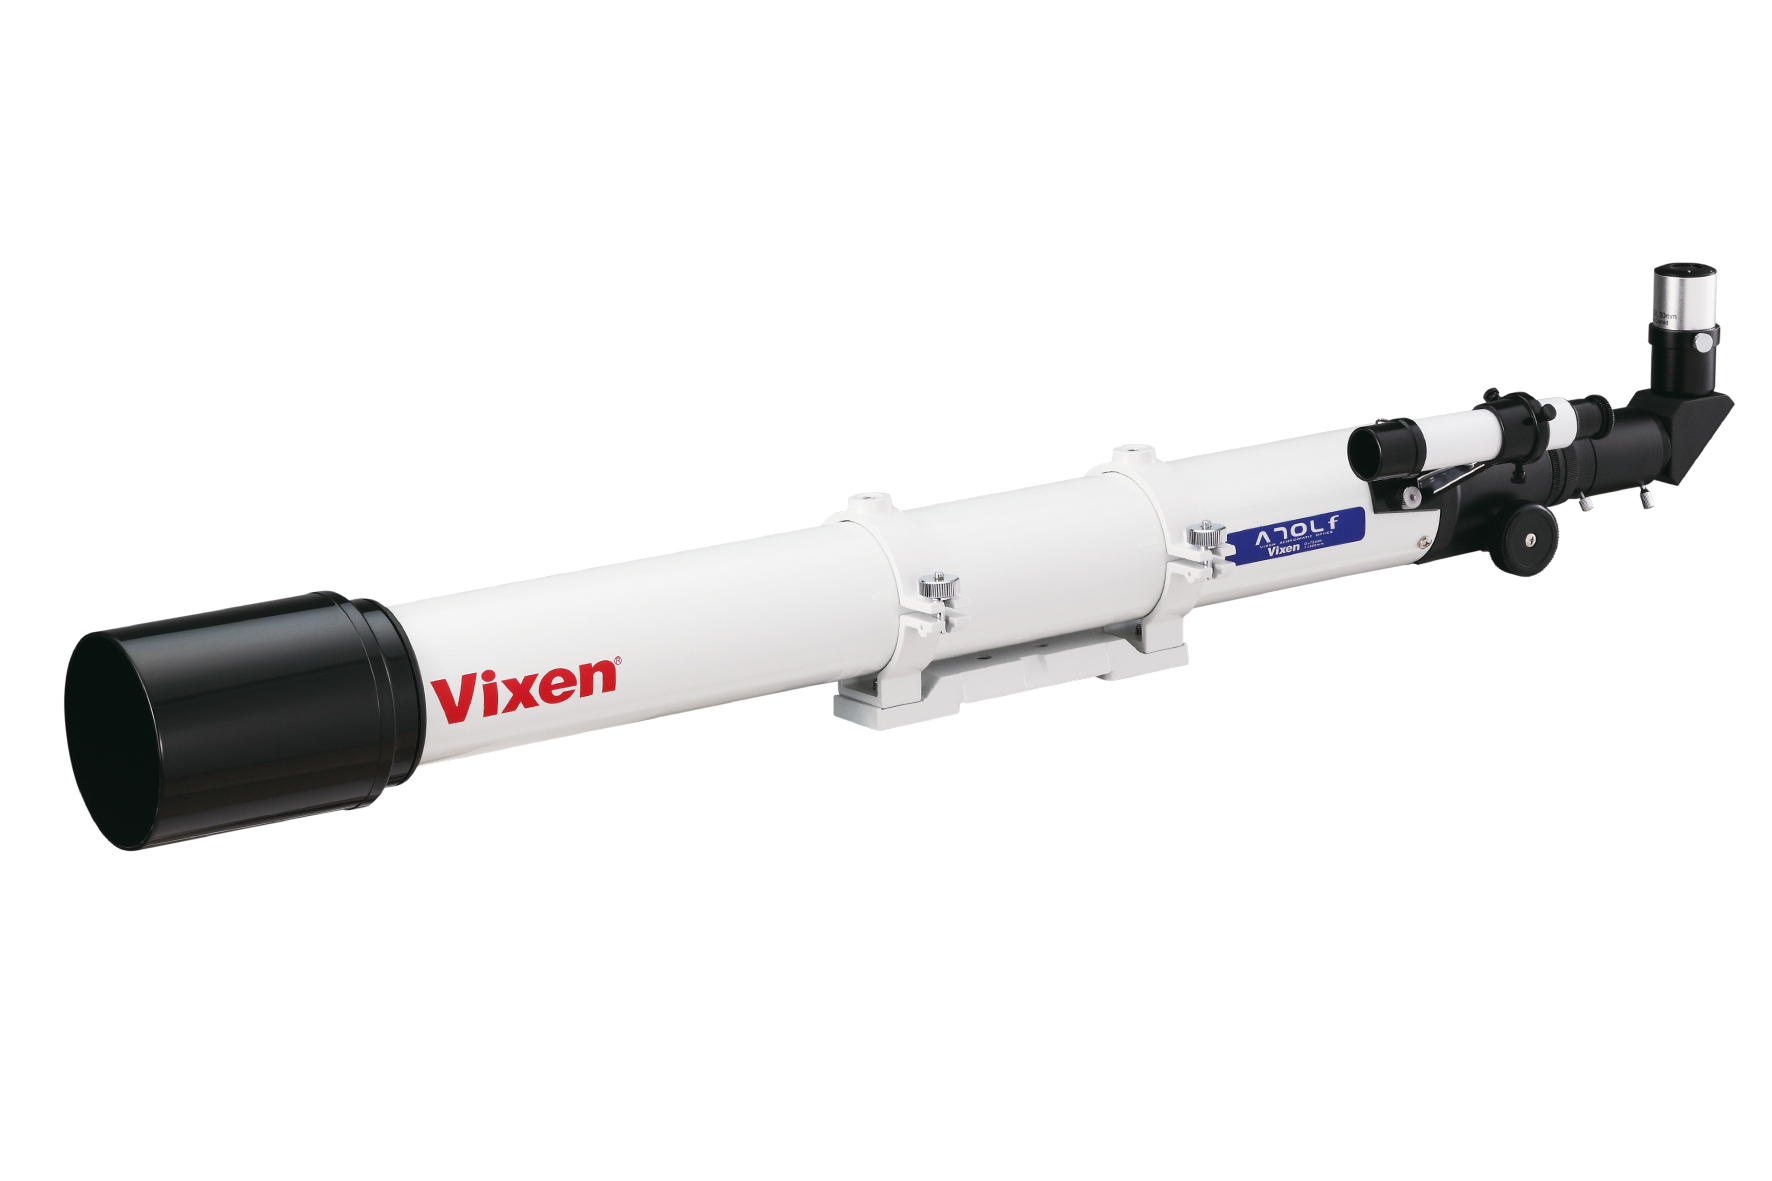 Vixen A70Lf Achromatischer Refraktor - optischer Tubus - Refurbished